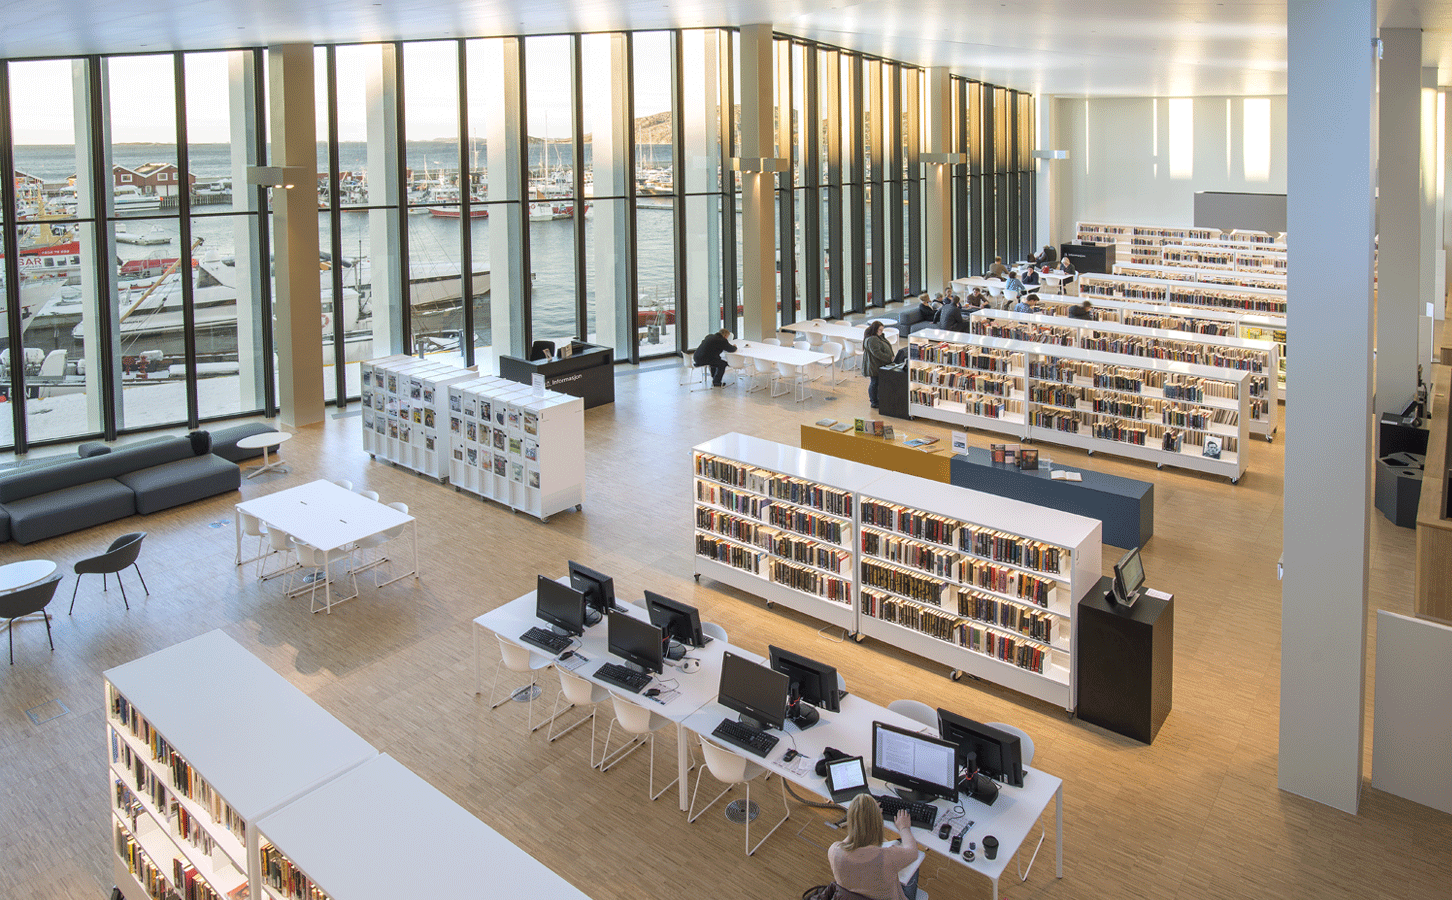 Stormen bibliotek